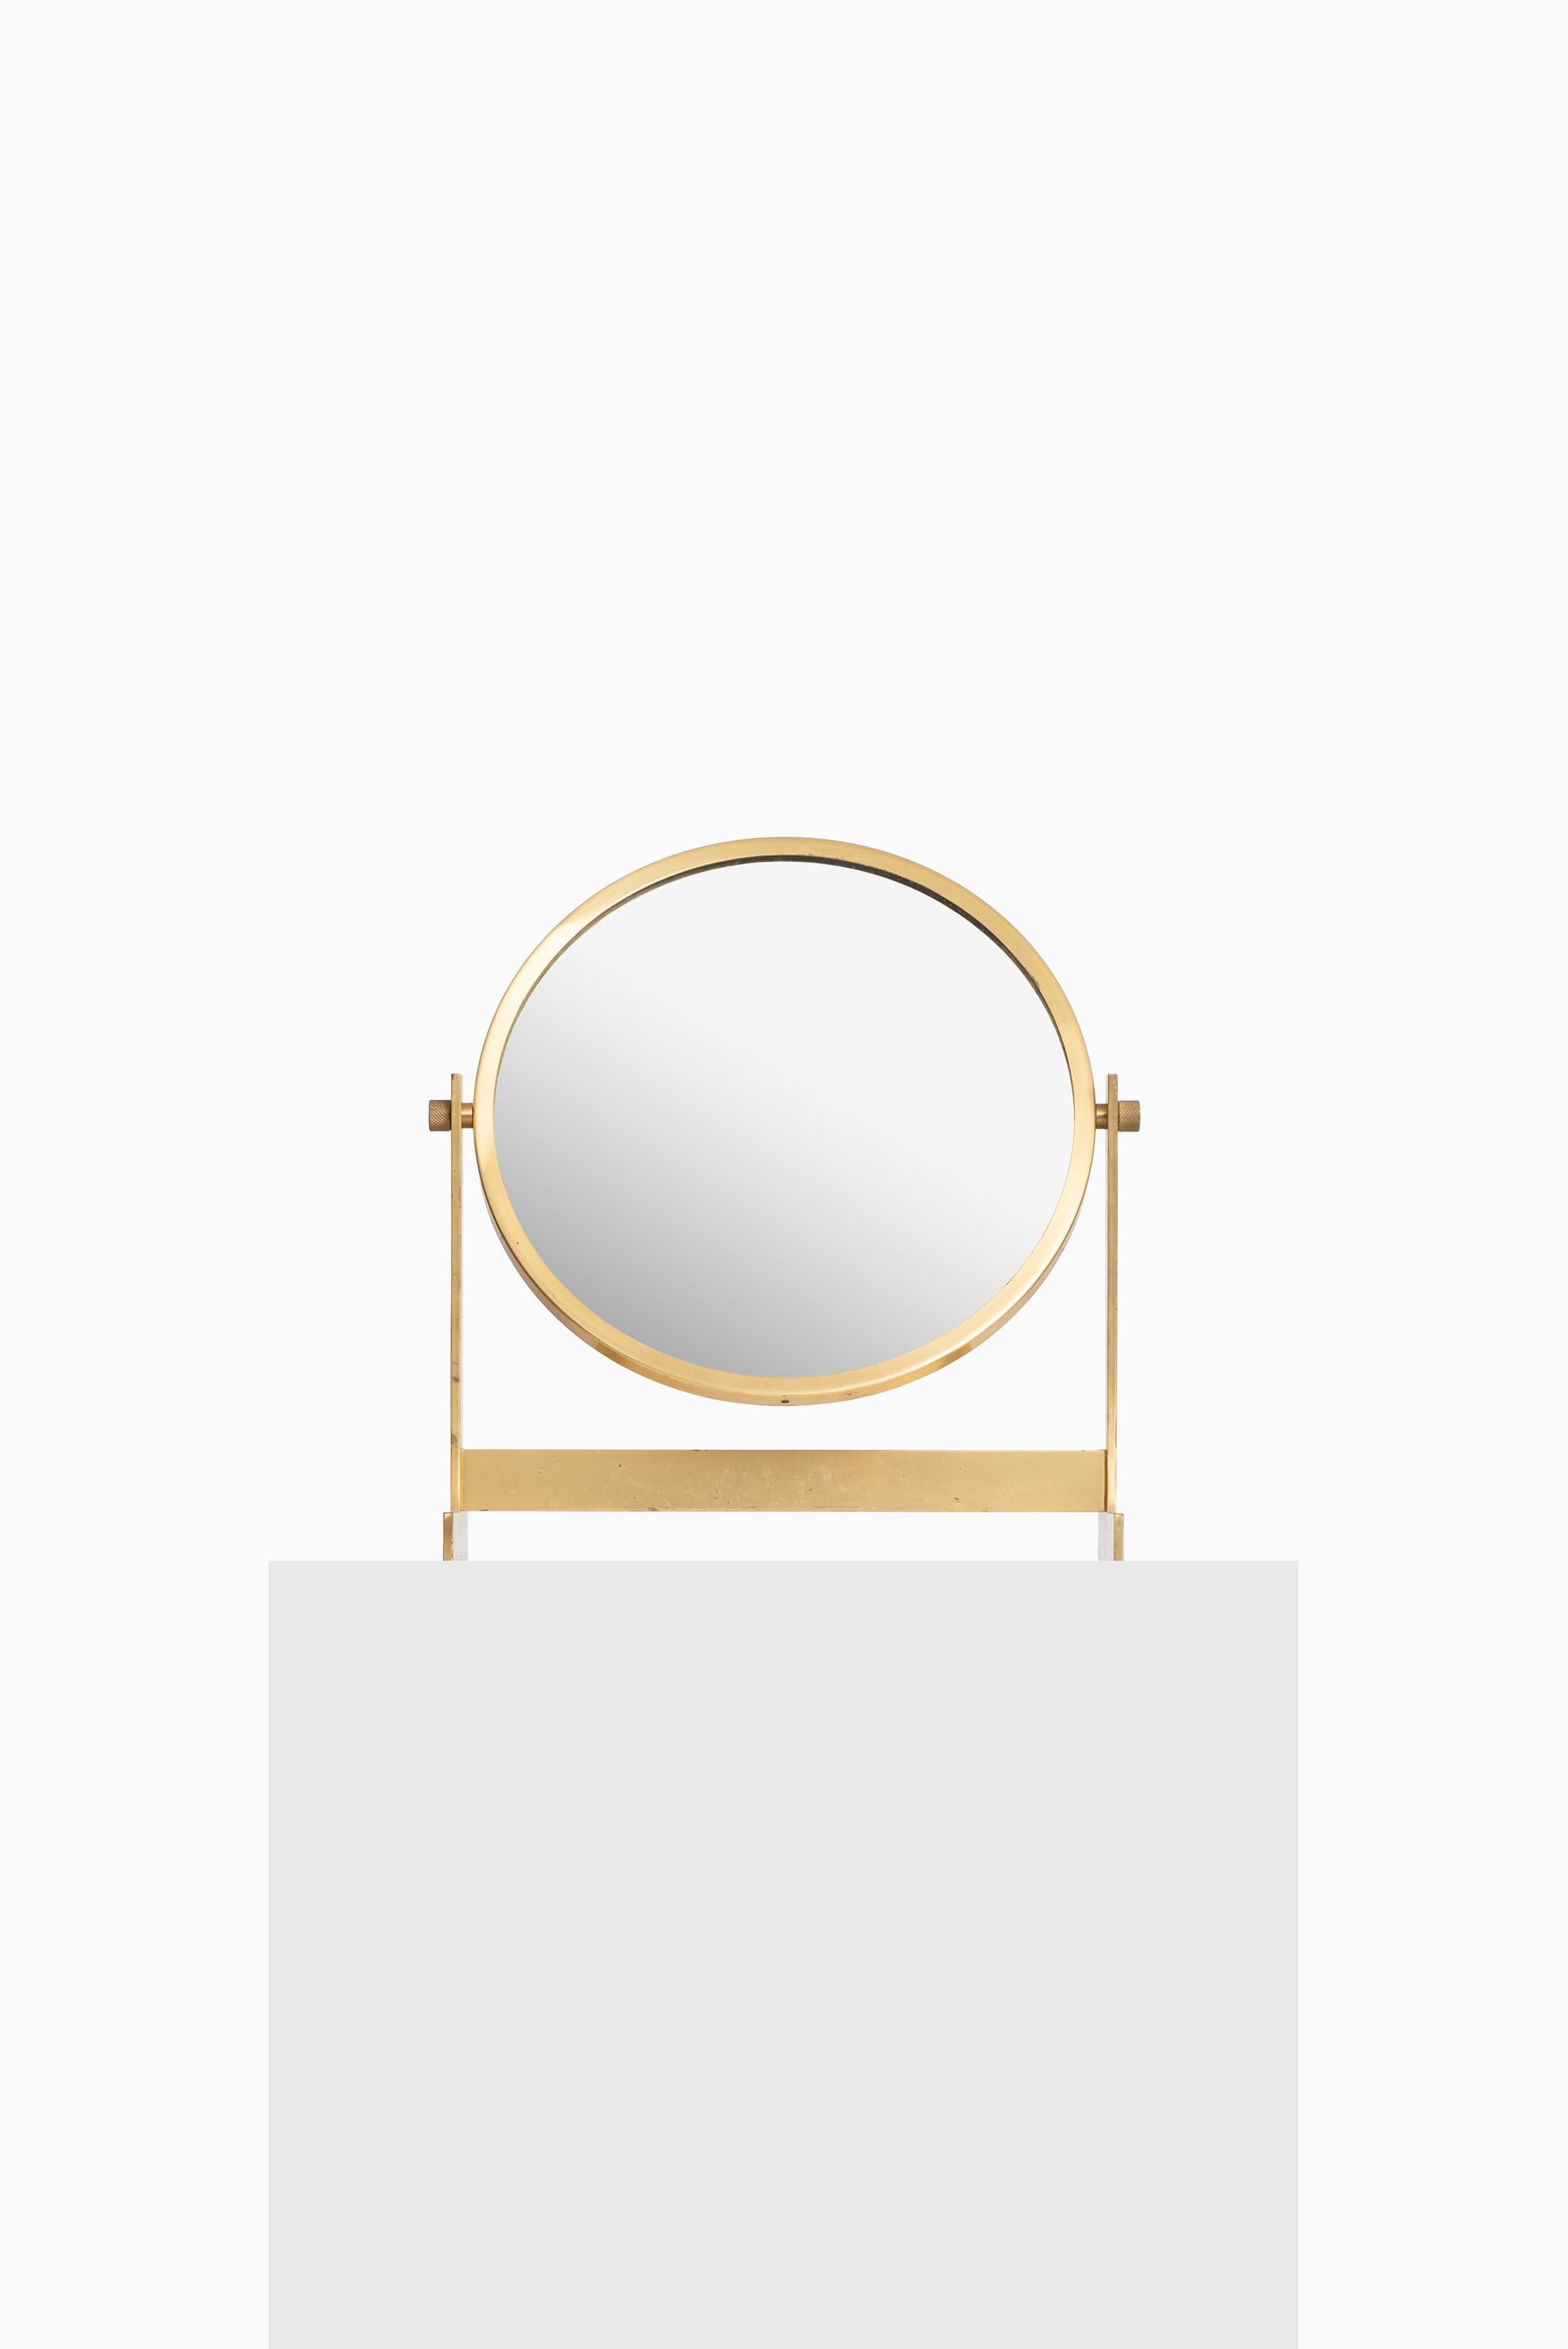 Scandinavian Modern Table mirror in brass produced in Sweden